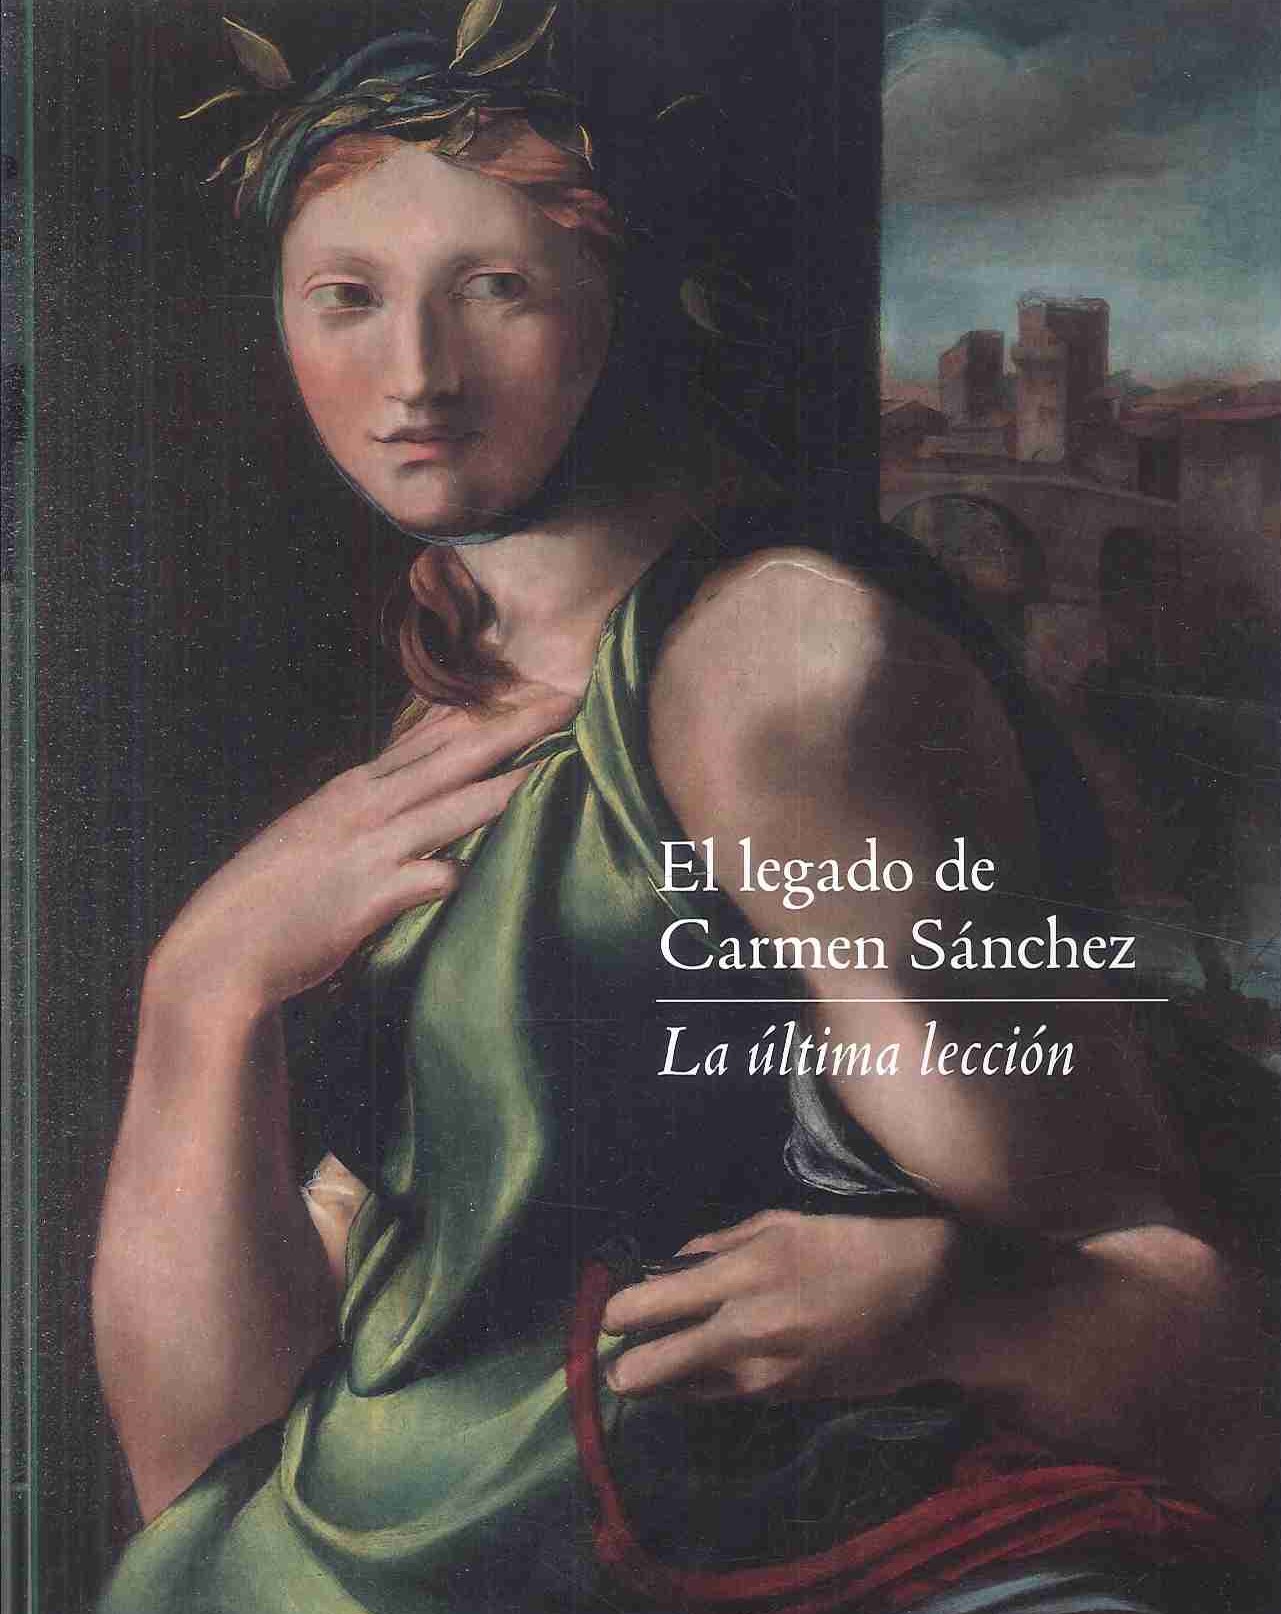 Imagen de portada del libro El legado de Carmen Sánchez